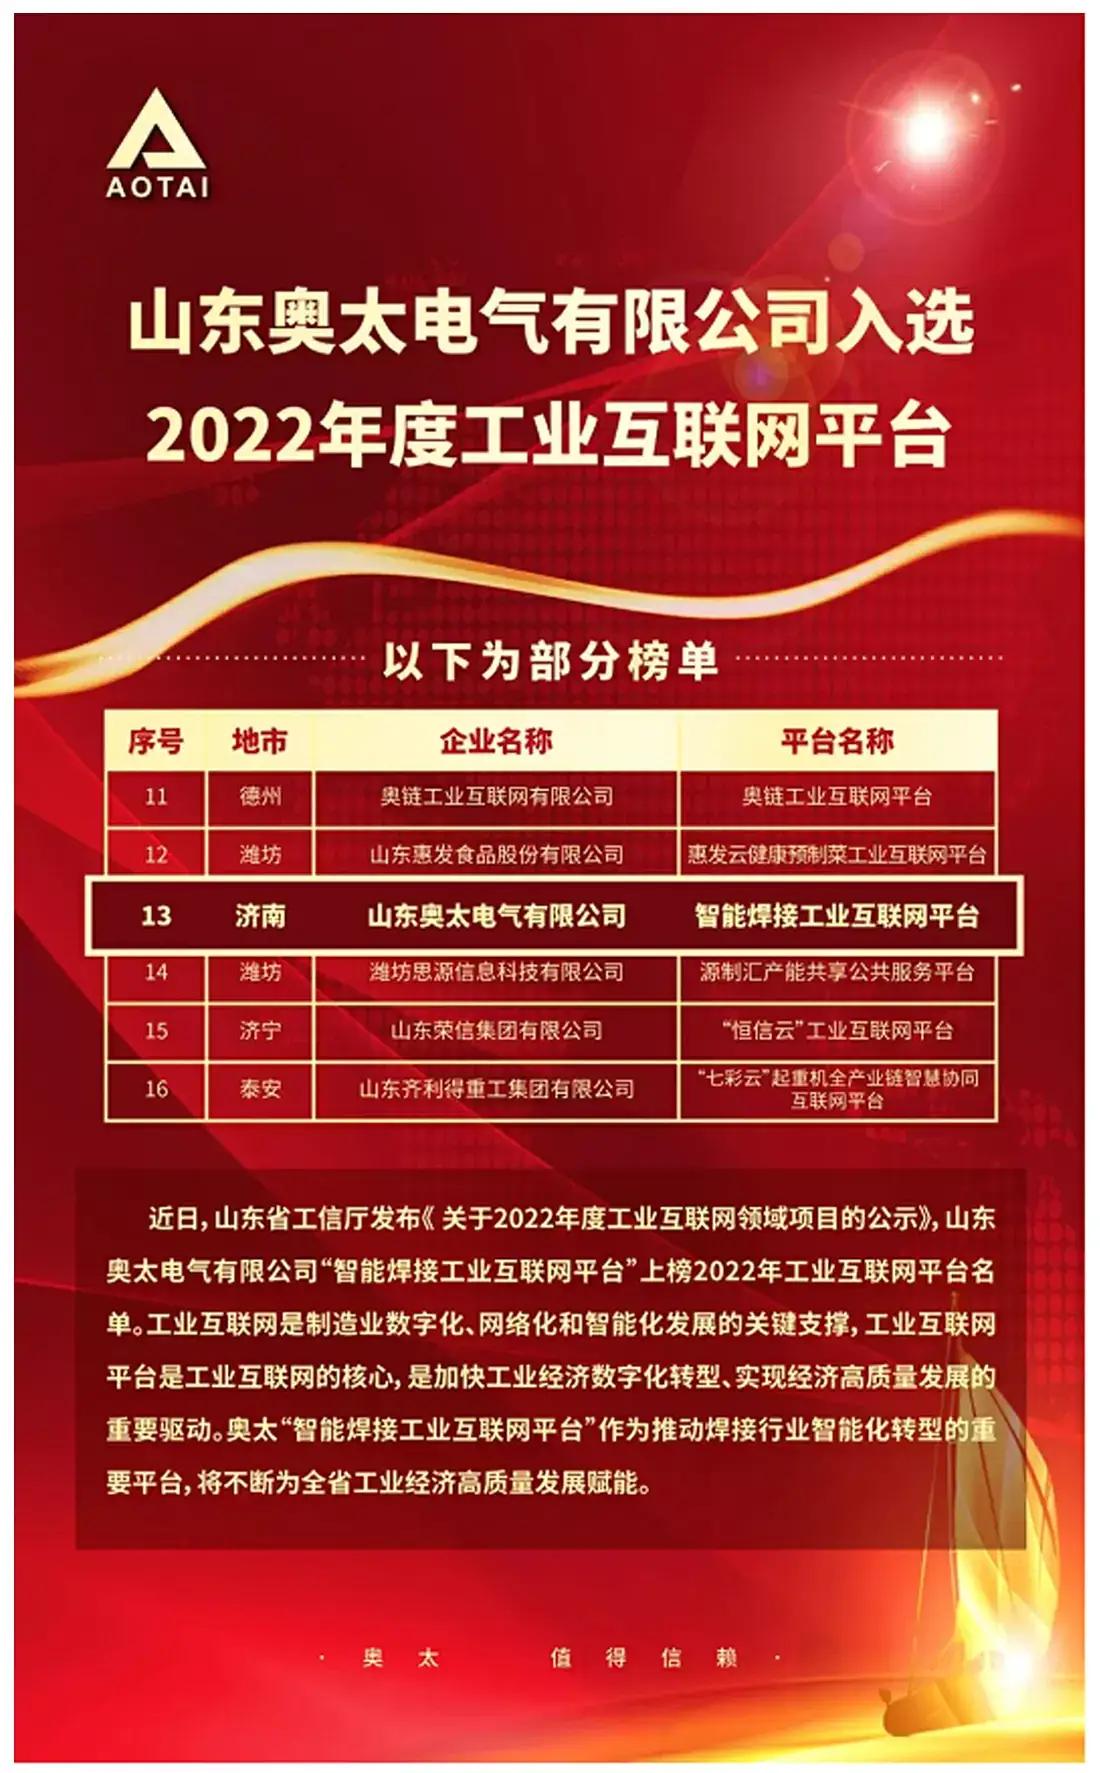 Shandong Aotai включен в список промышленных интернет-платформ 2022 года